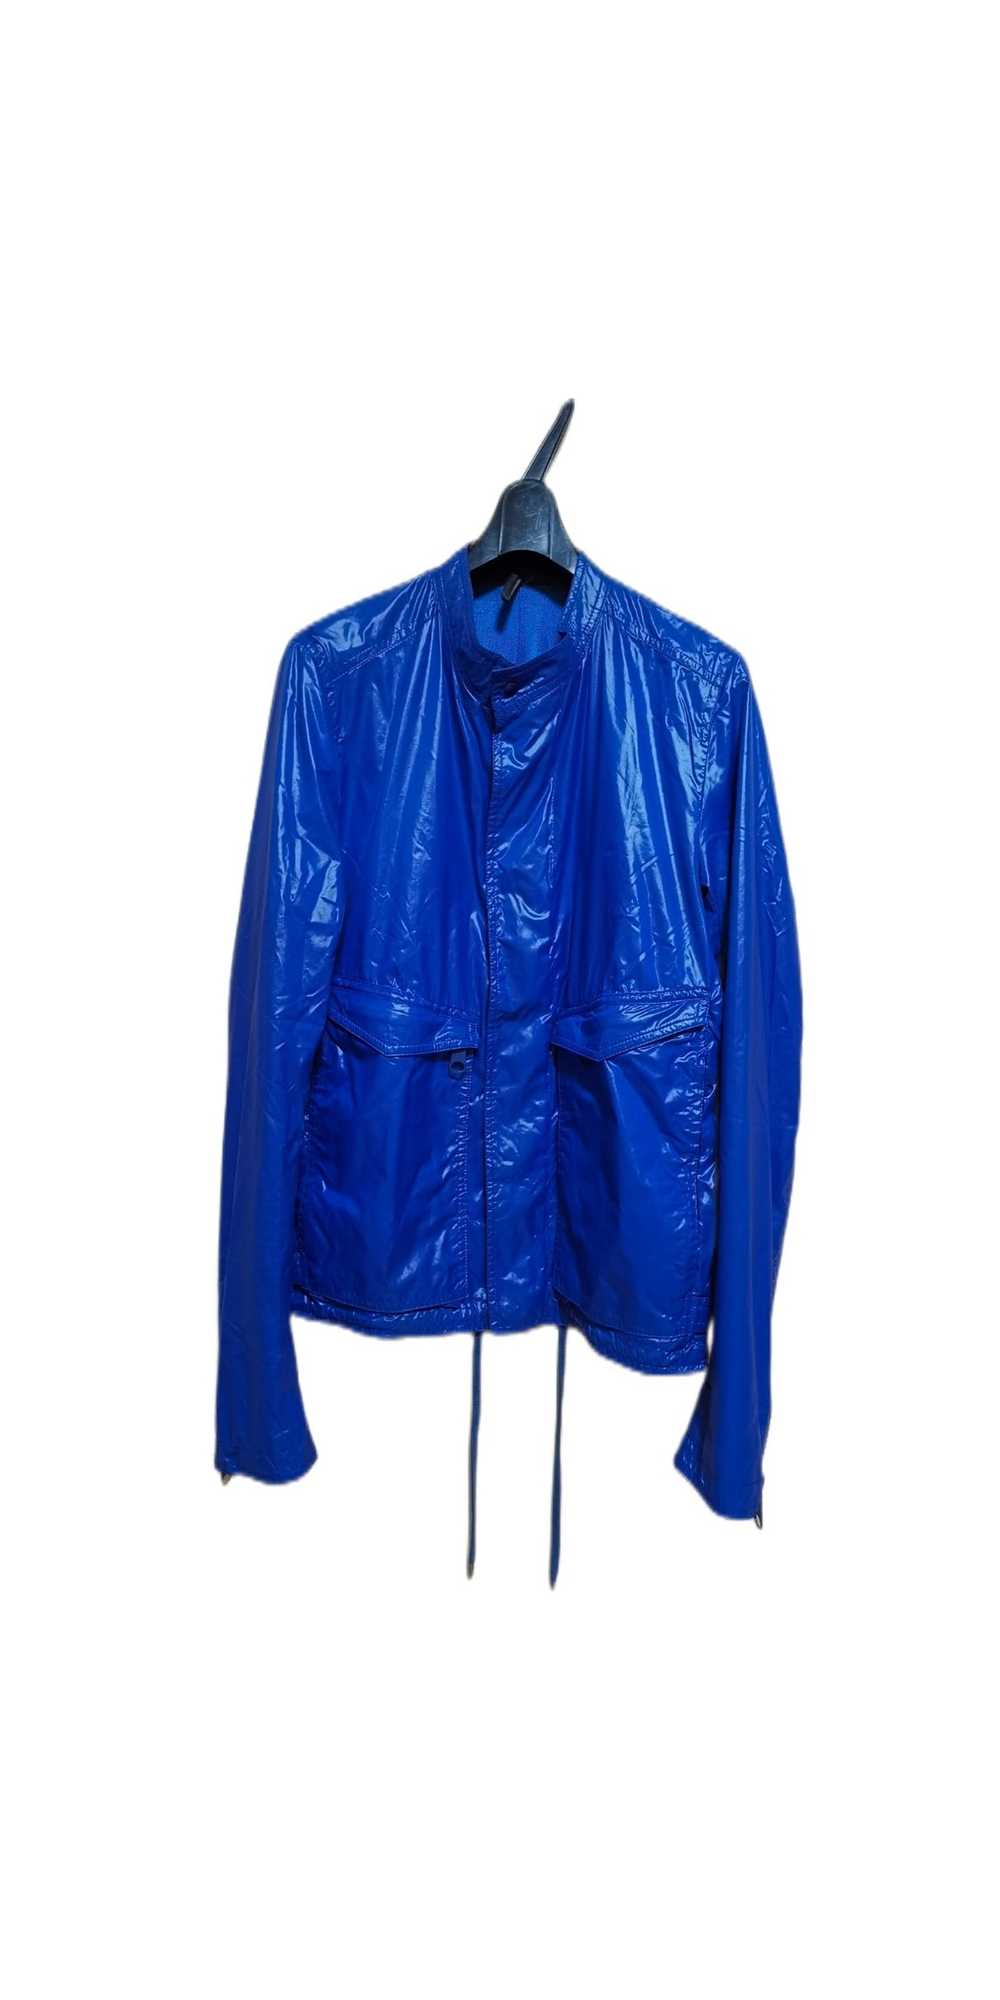 Dior Dior zipper jacket - image 1